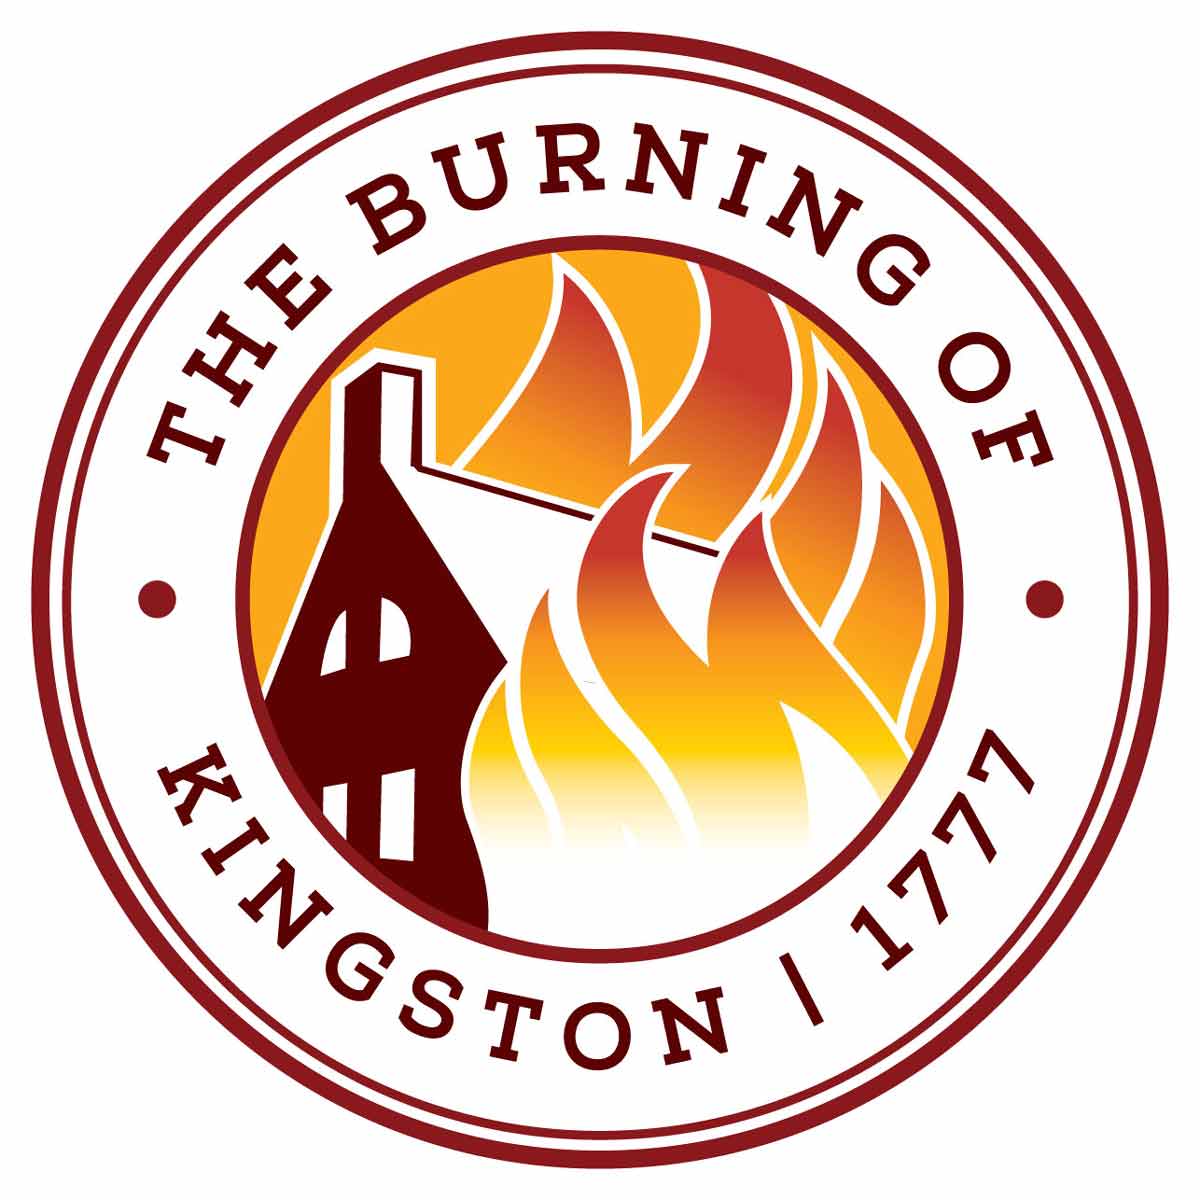 Visit https://www.burningofkingston.com